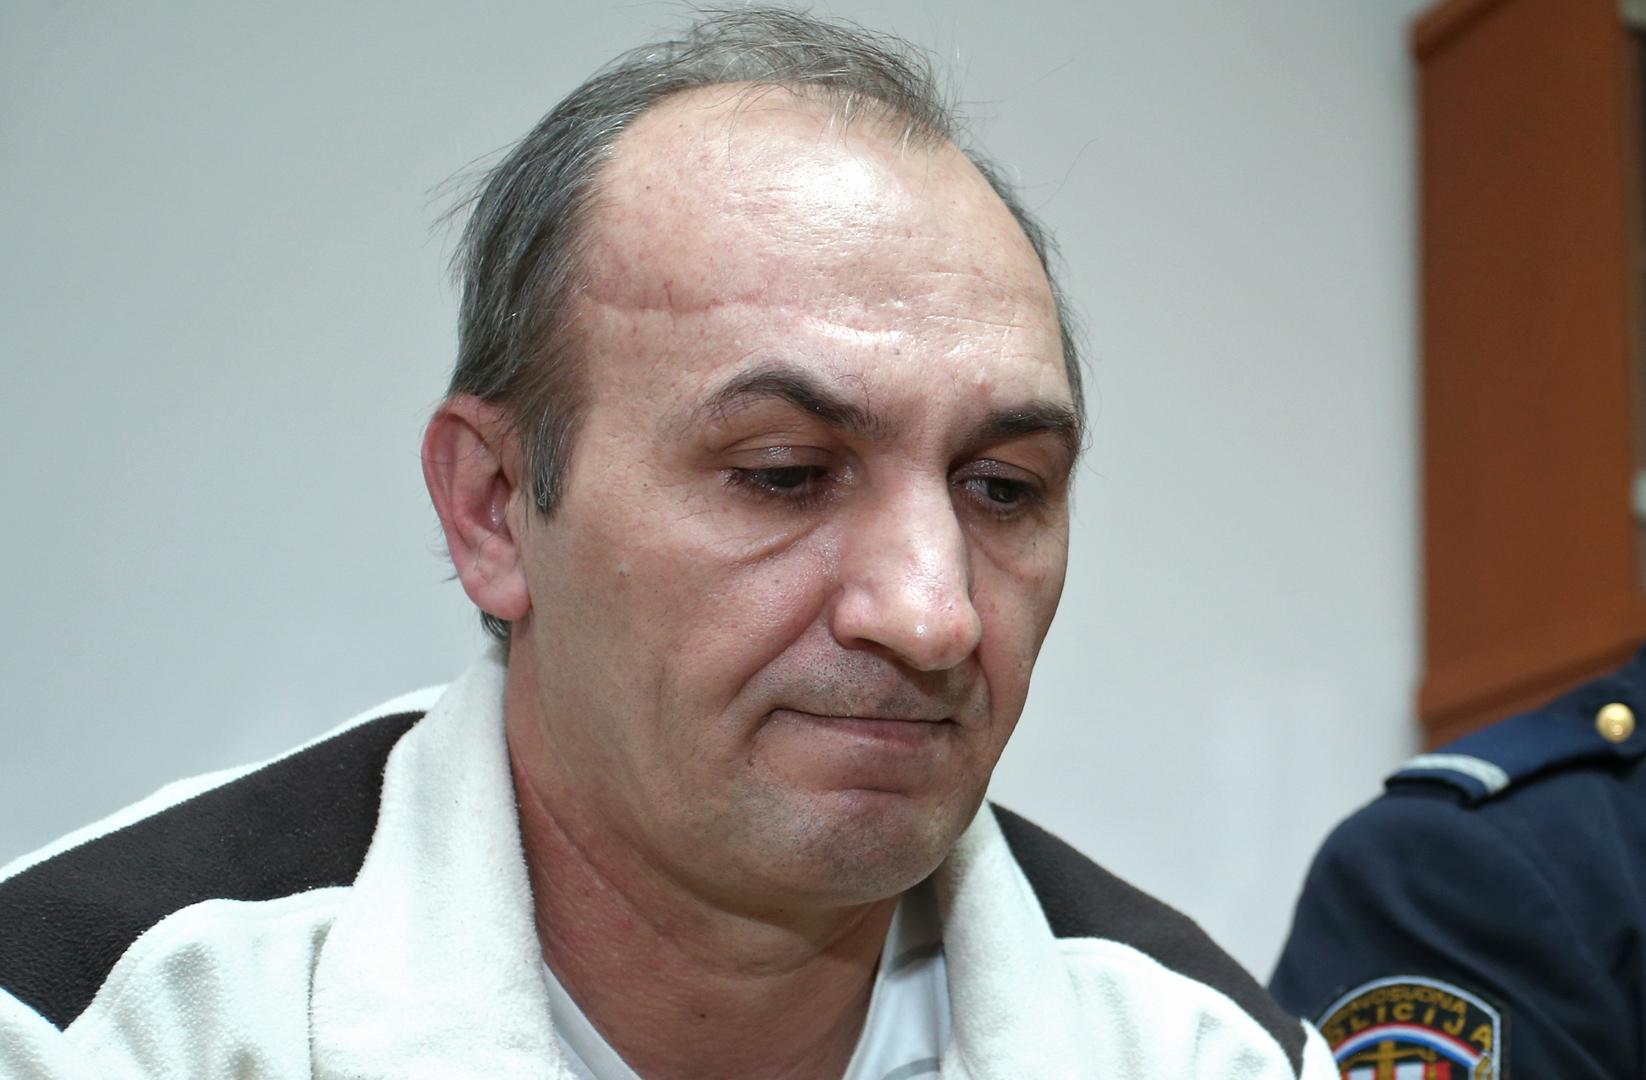 Fejzo Hodić (50) pravomoćno je 2016. osuđen na 32 godine zatvora zbog bestijalnog ubojstva vlastite supruge.
